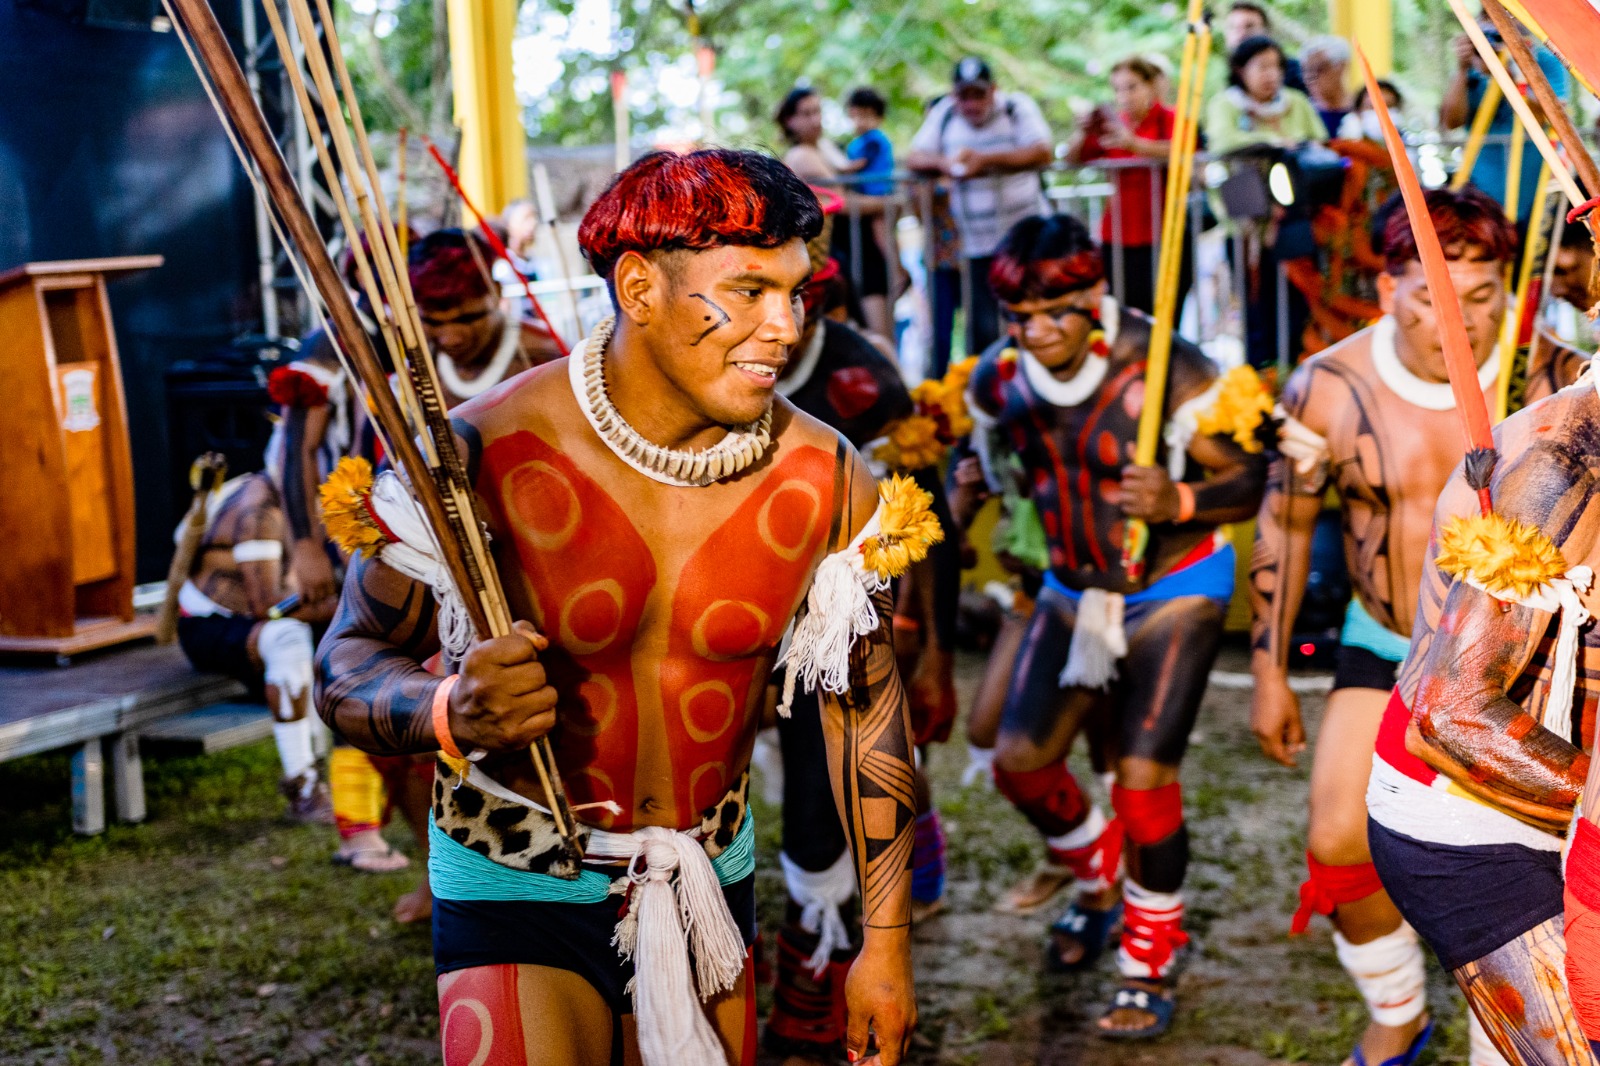 Festival Indígena de Bertioga celebrará tradição e cultura dos povos originários em abril